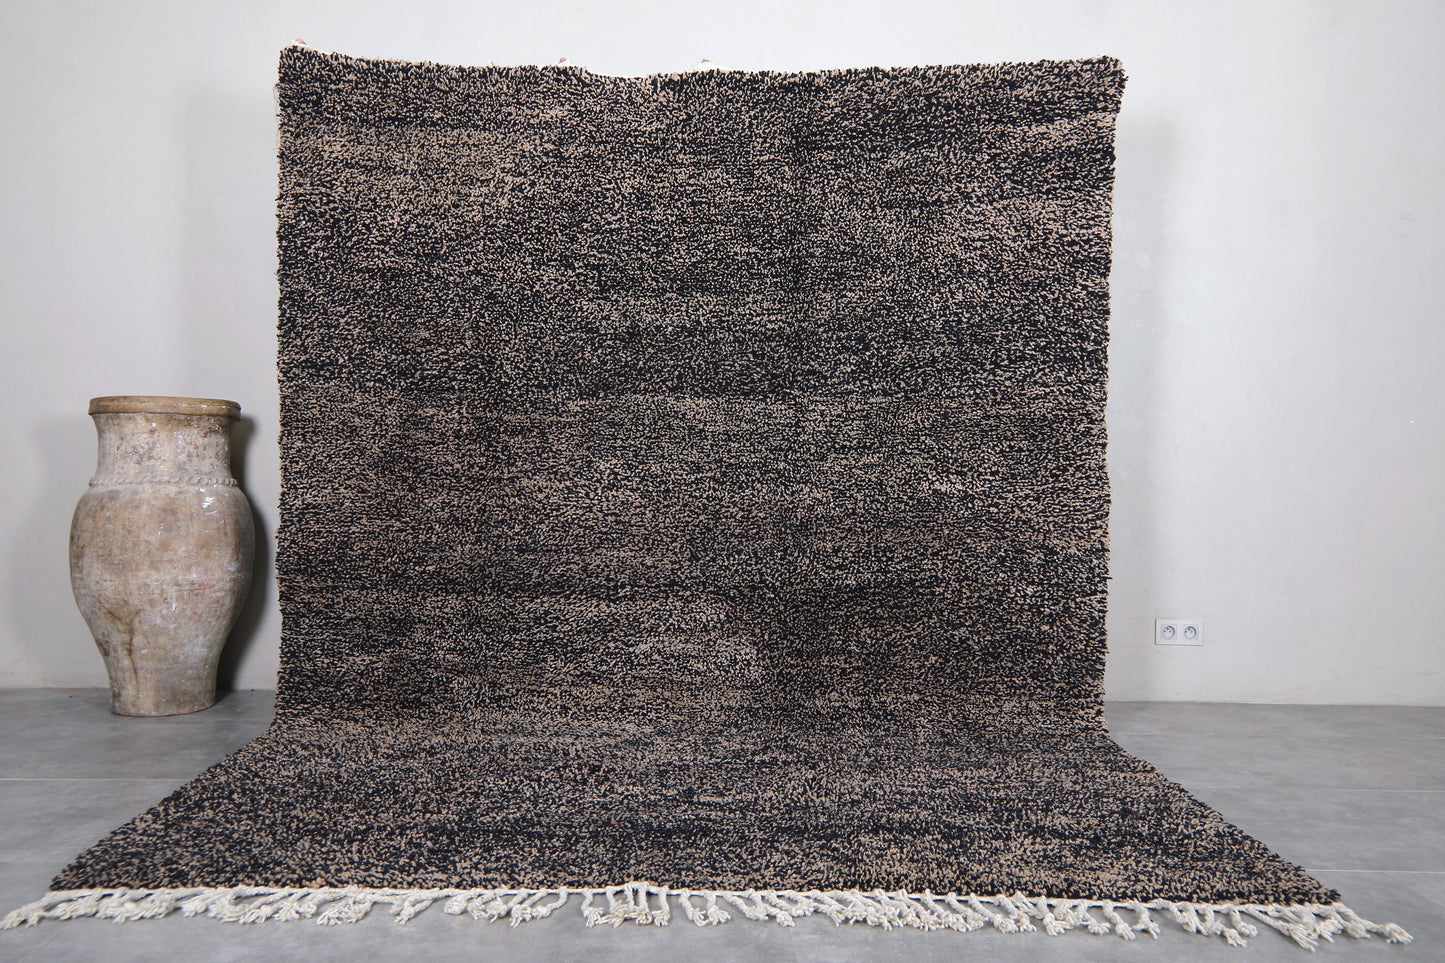 Moroccan rug 7.5 X 10.3 Feet - Beni ourain rugs